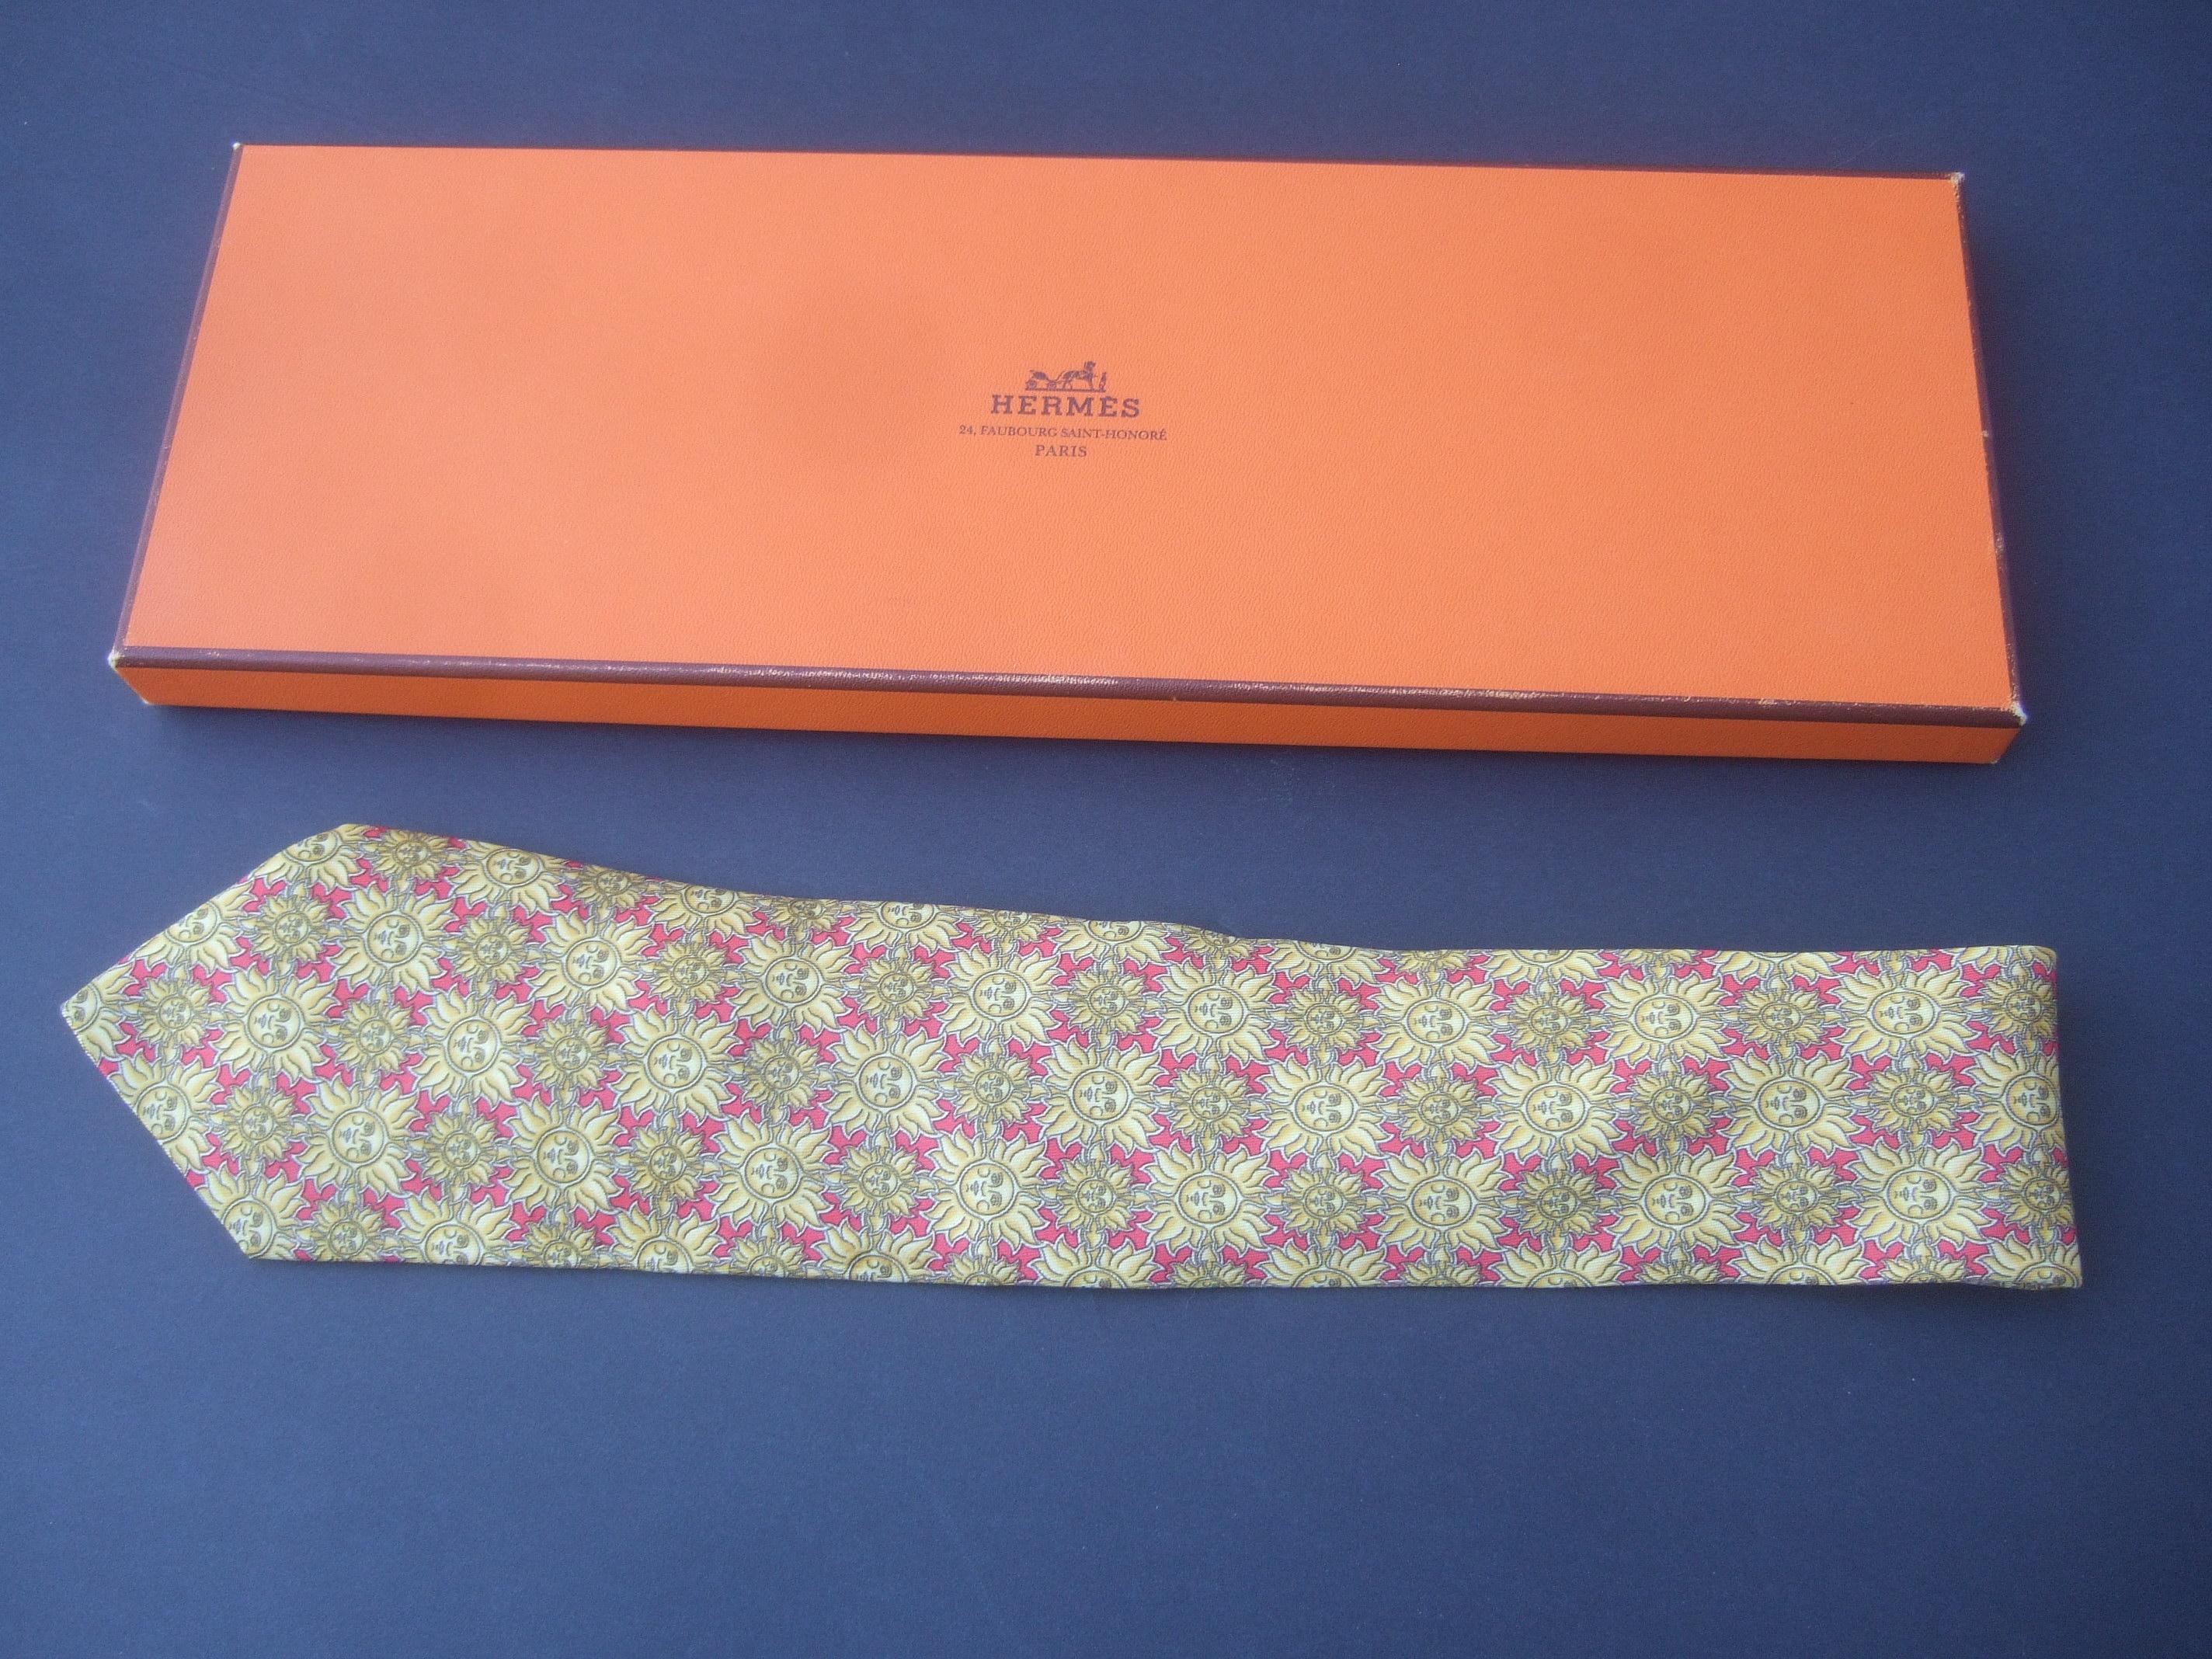 Hermès Paris - Cravate en soie imprimée soleil doré dans une boîte Hermès, circa 1990 7